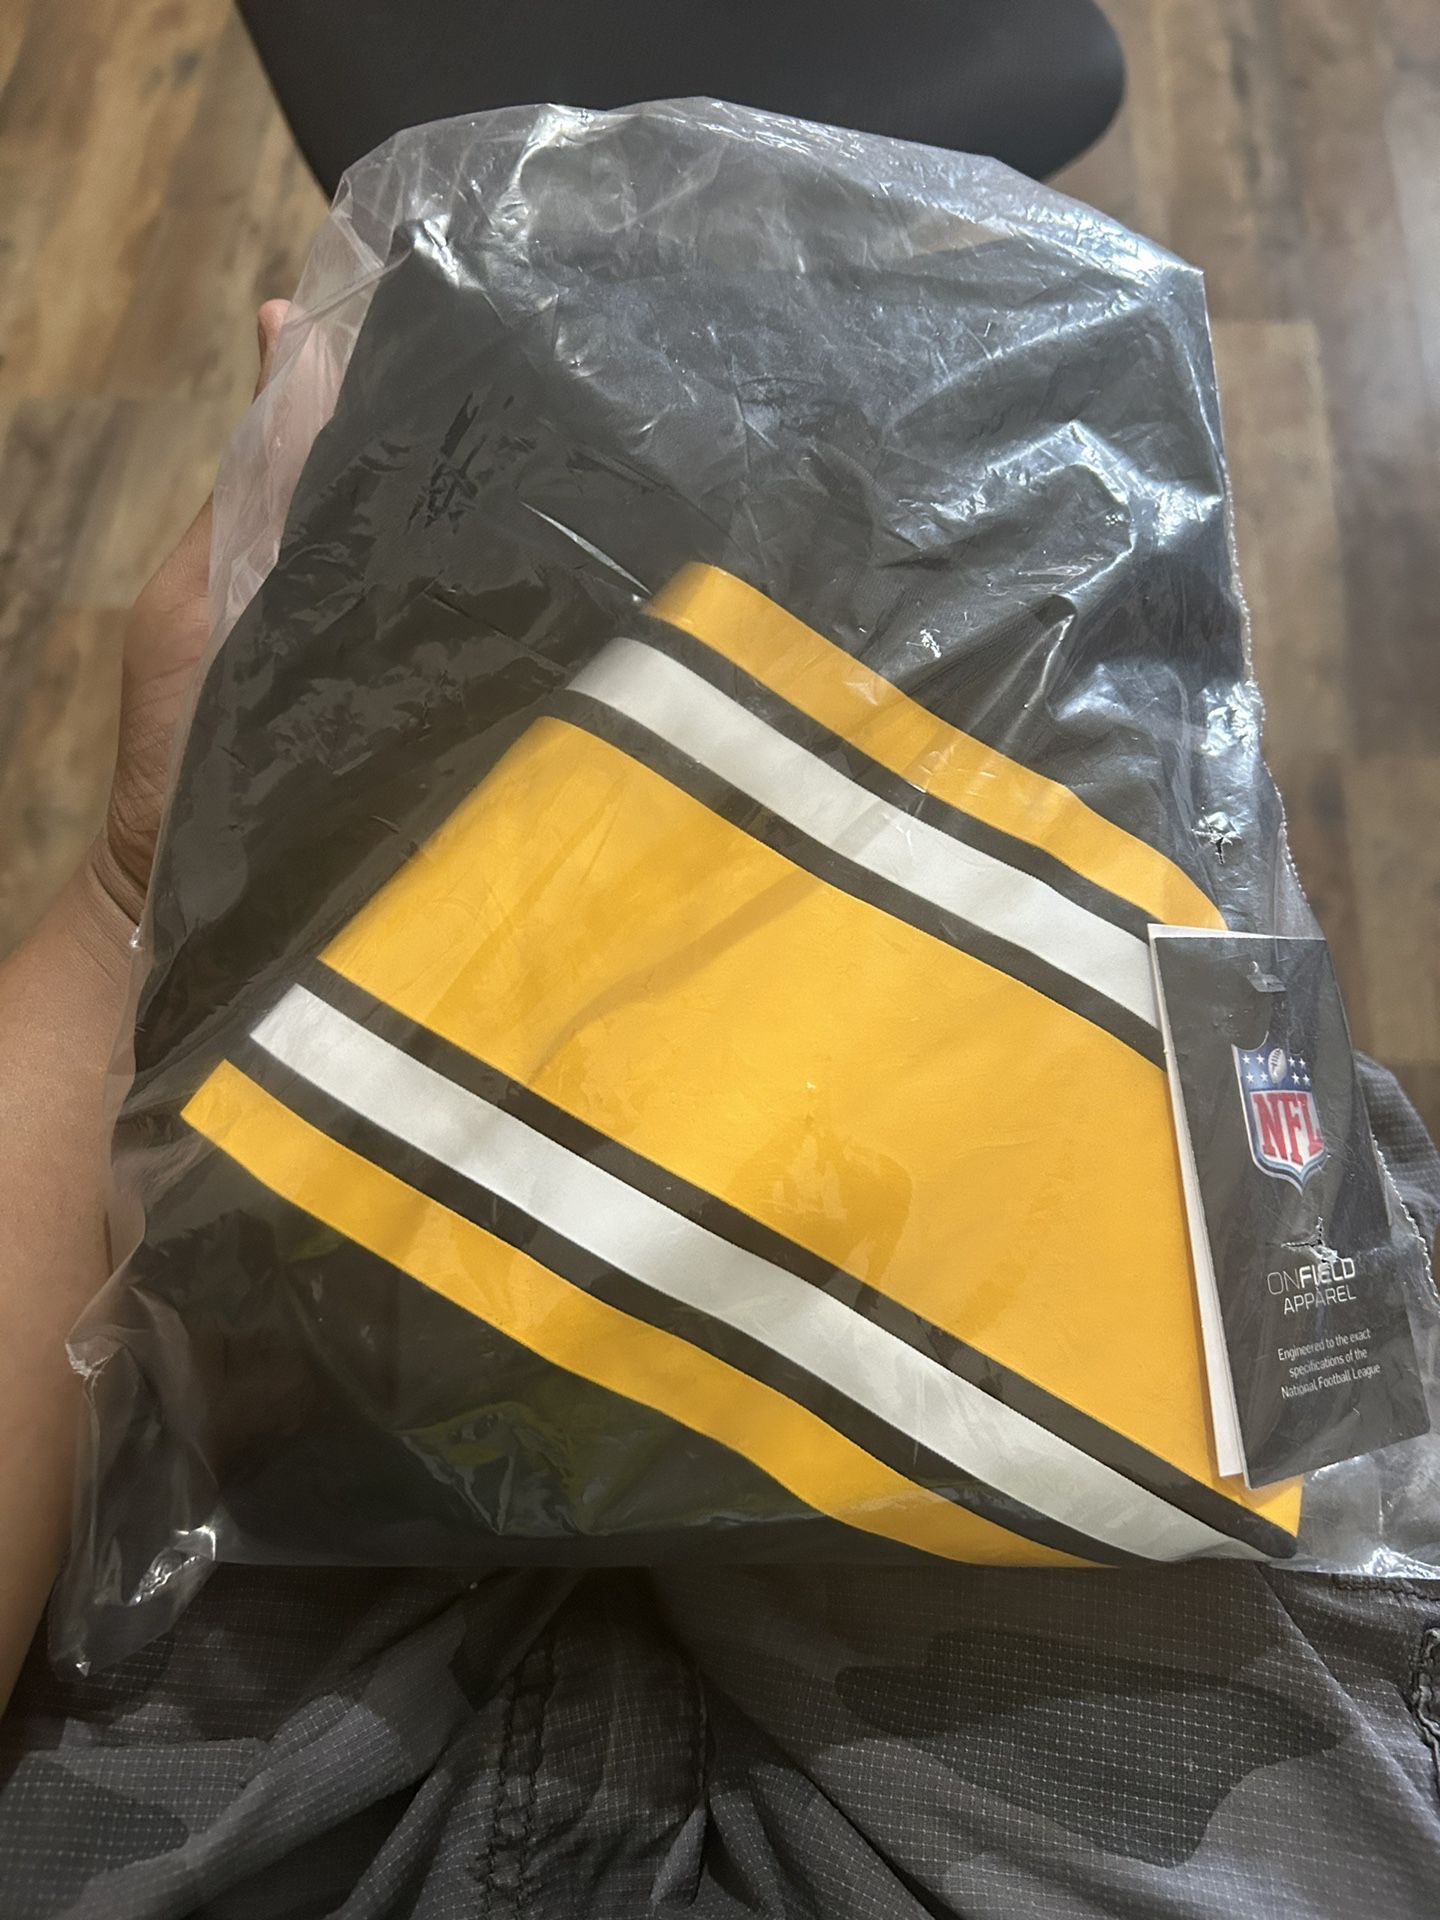 Steelers jersey